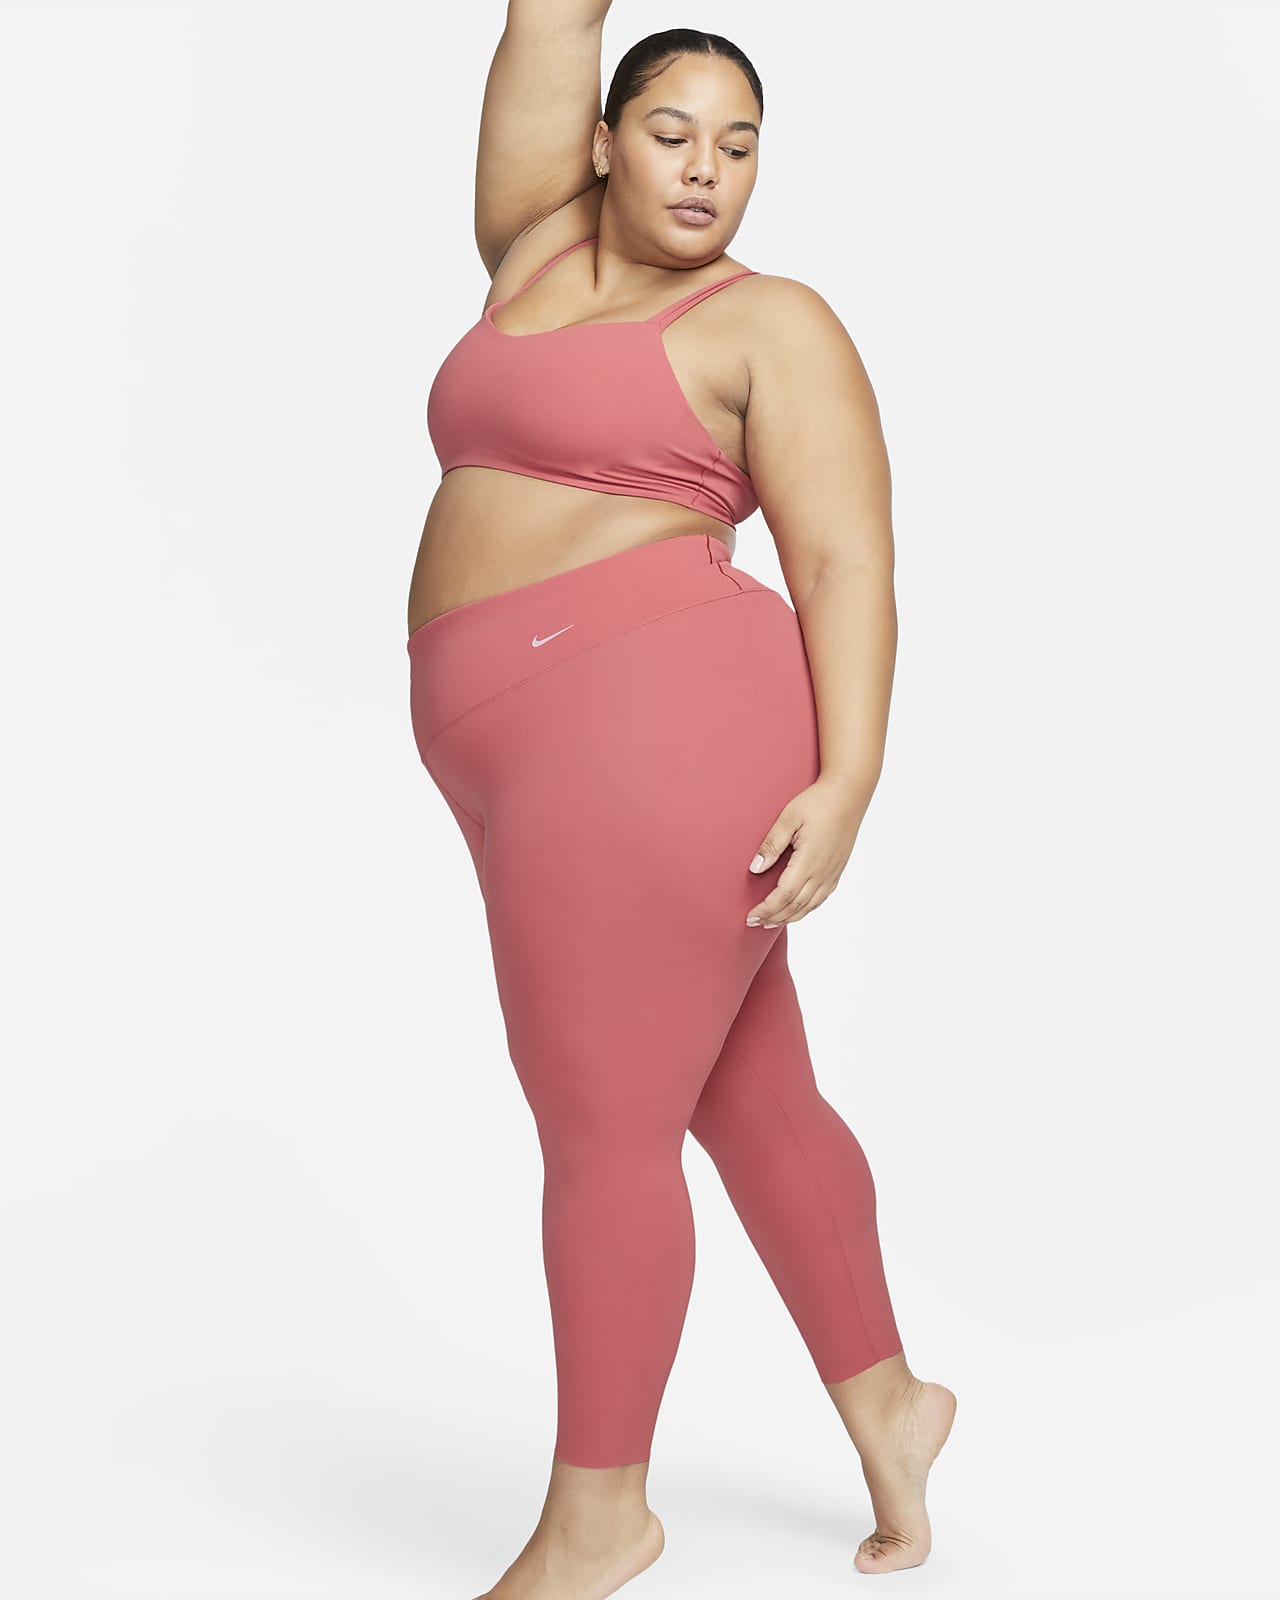 Nike Zenvy-leggings i 7/8-længde med høj talje og let støtte til kvinder (plus size)